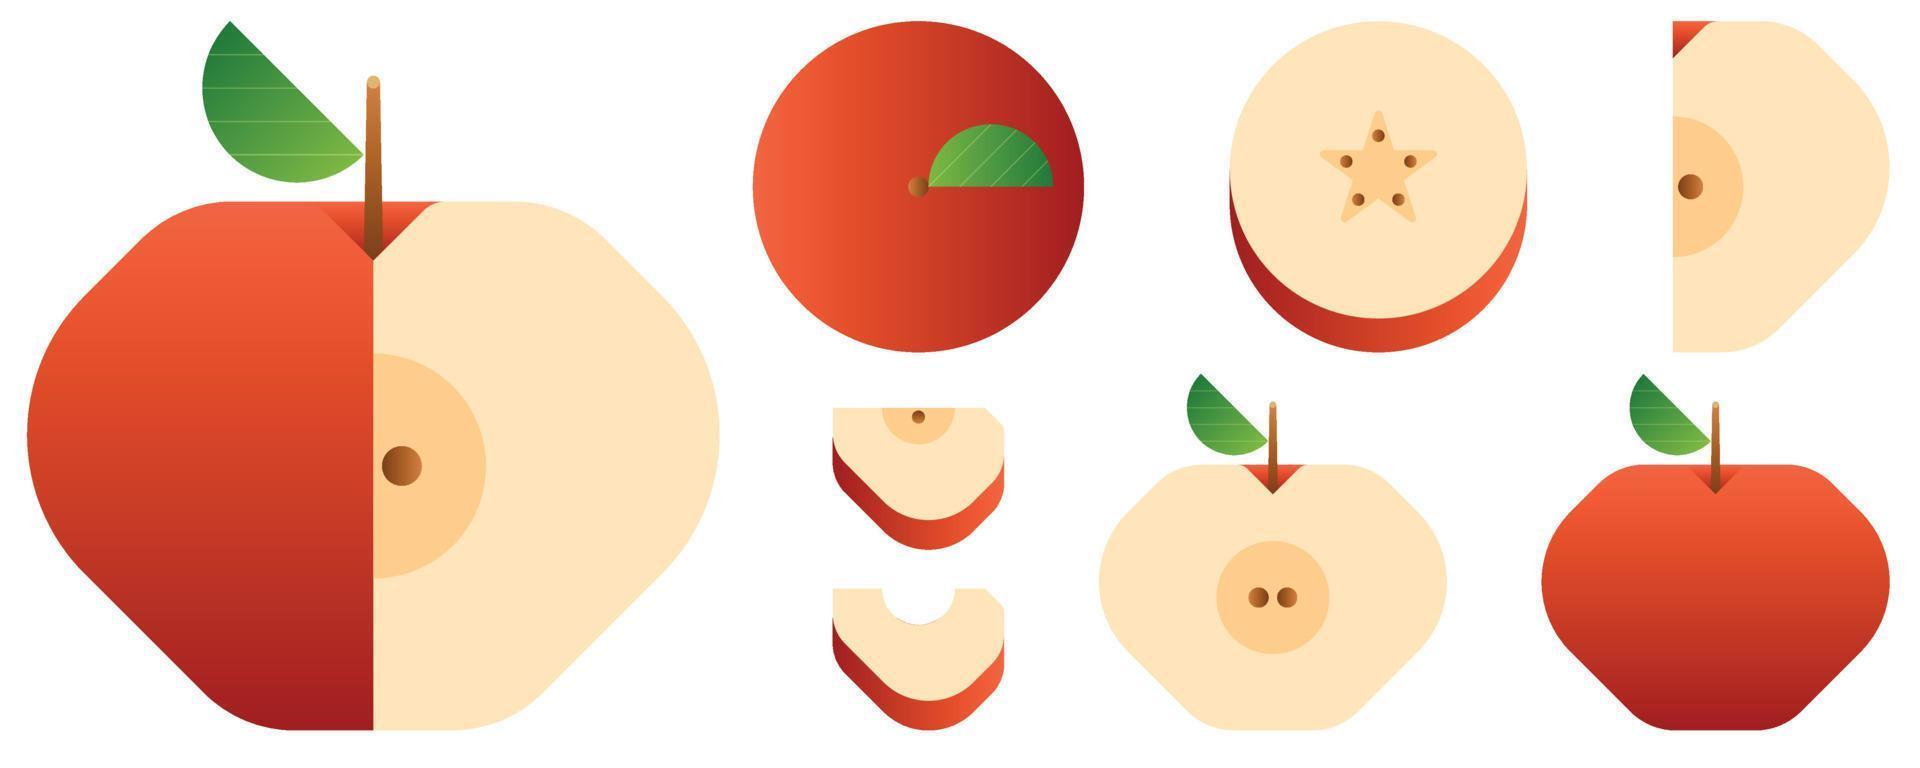 isolerade grönsaker och frukter på vit bakgrund. vektor illustration.